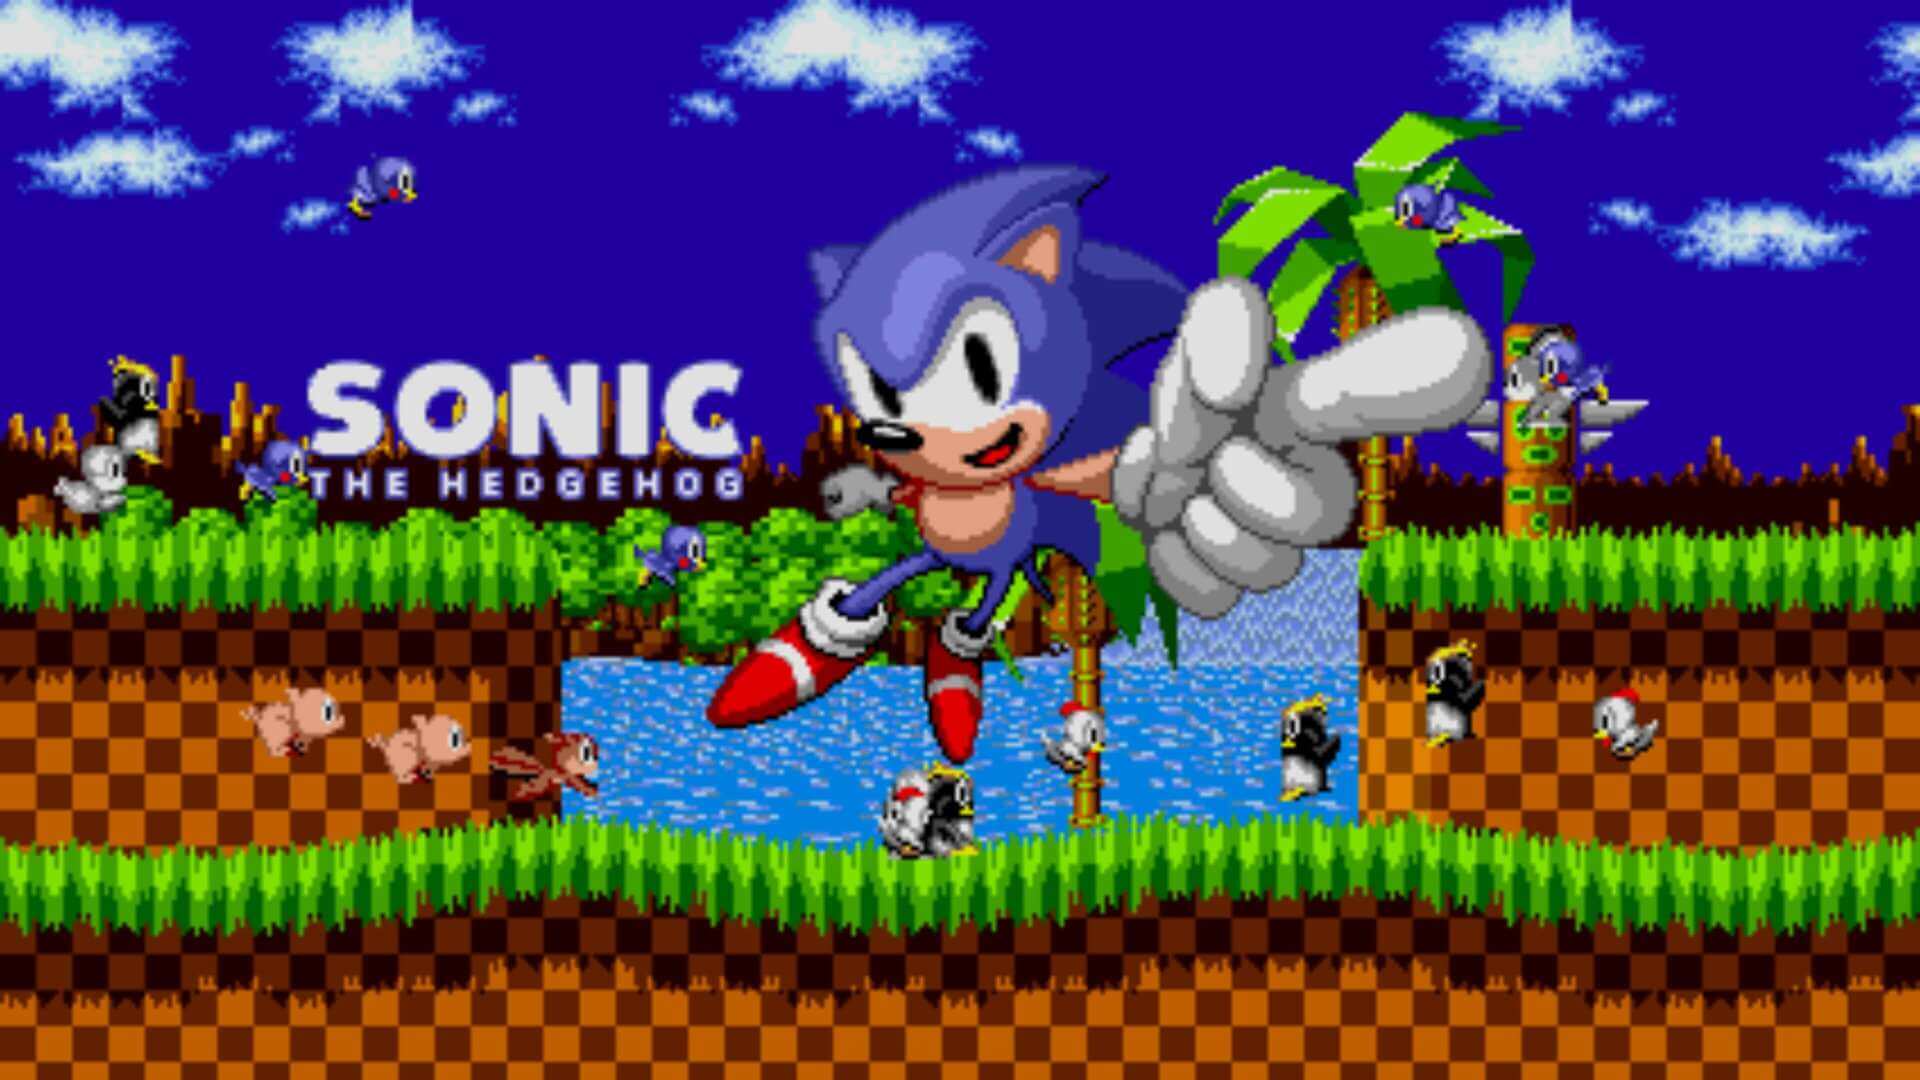 Sonic classic играть. Соник на сеге 16 бит. Соник 1 1991. Sonic the Hedgehog 1 сега. Соник 3 16 бит.